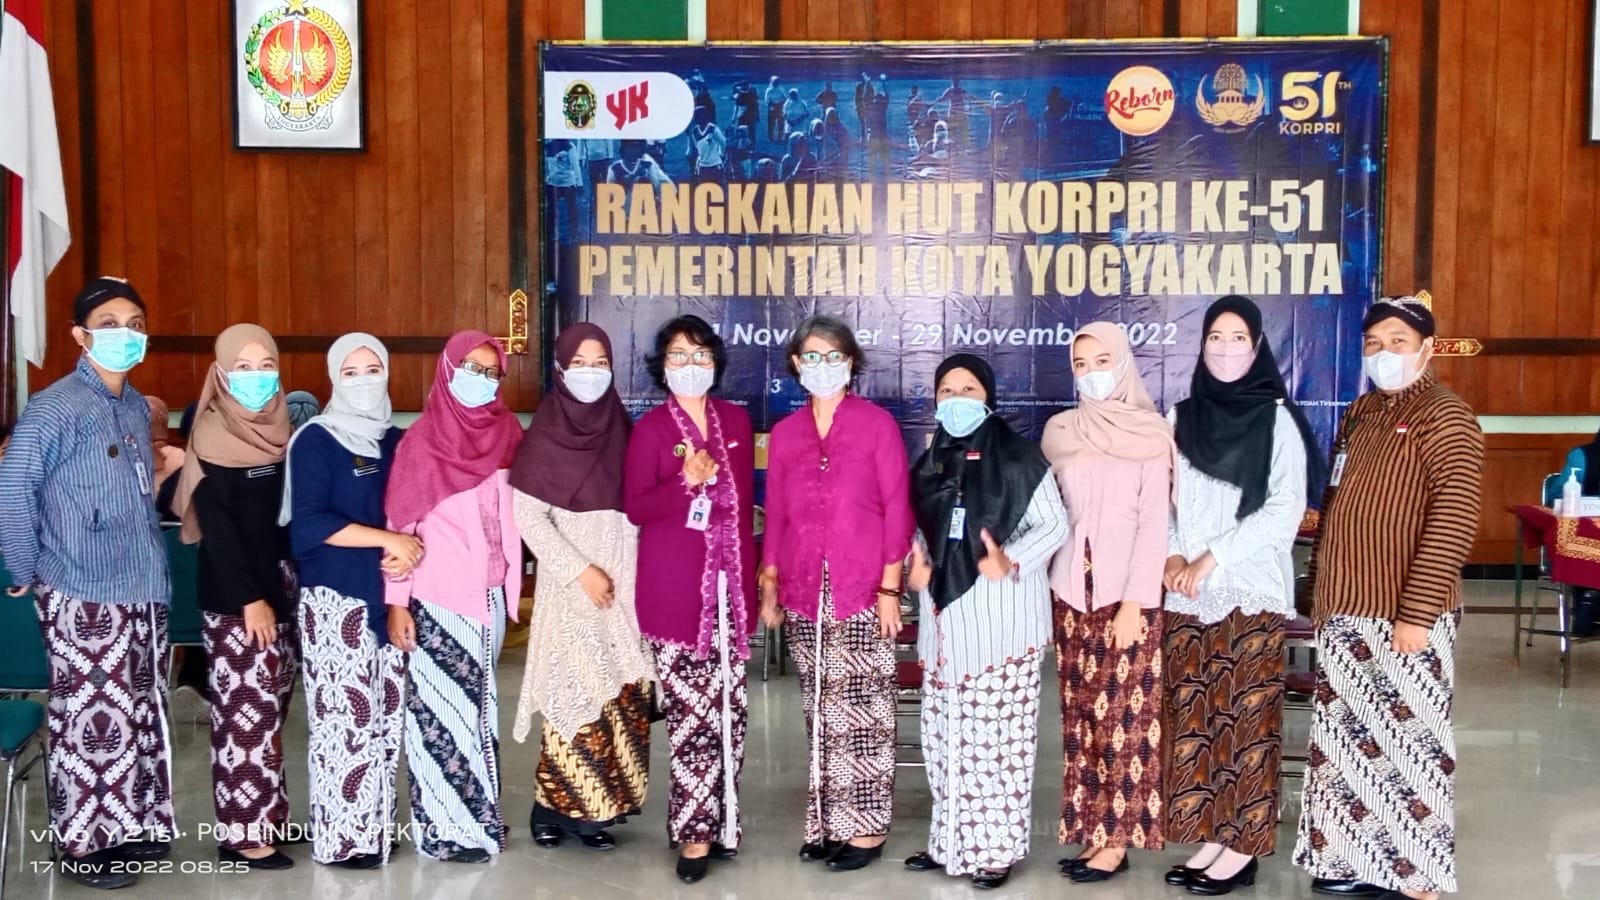 Pegawai Inspektorat Mengikuti Kegiatan POSBINDU yang diadakan di Bali Kota Yogyakarta